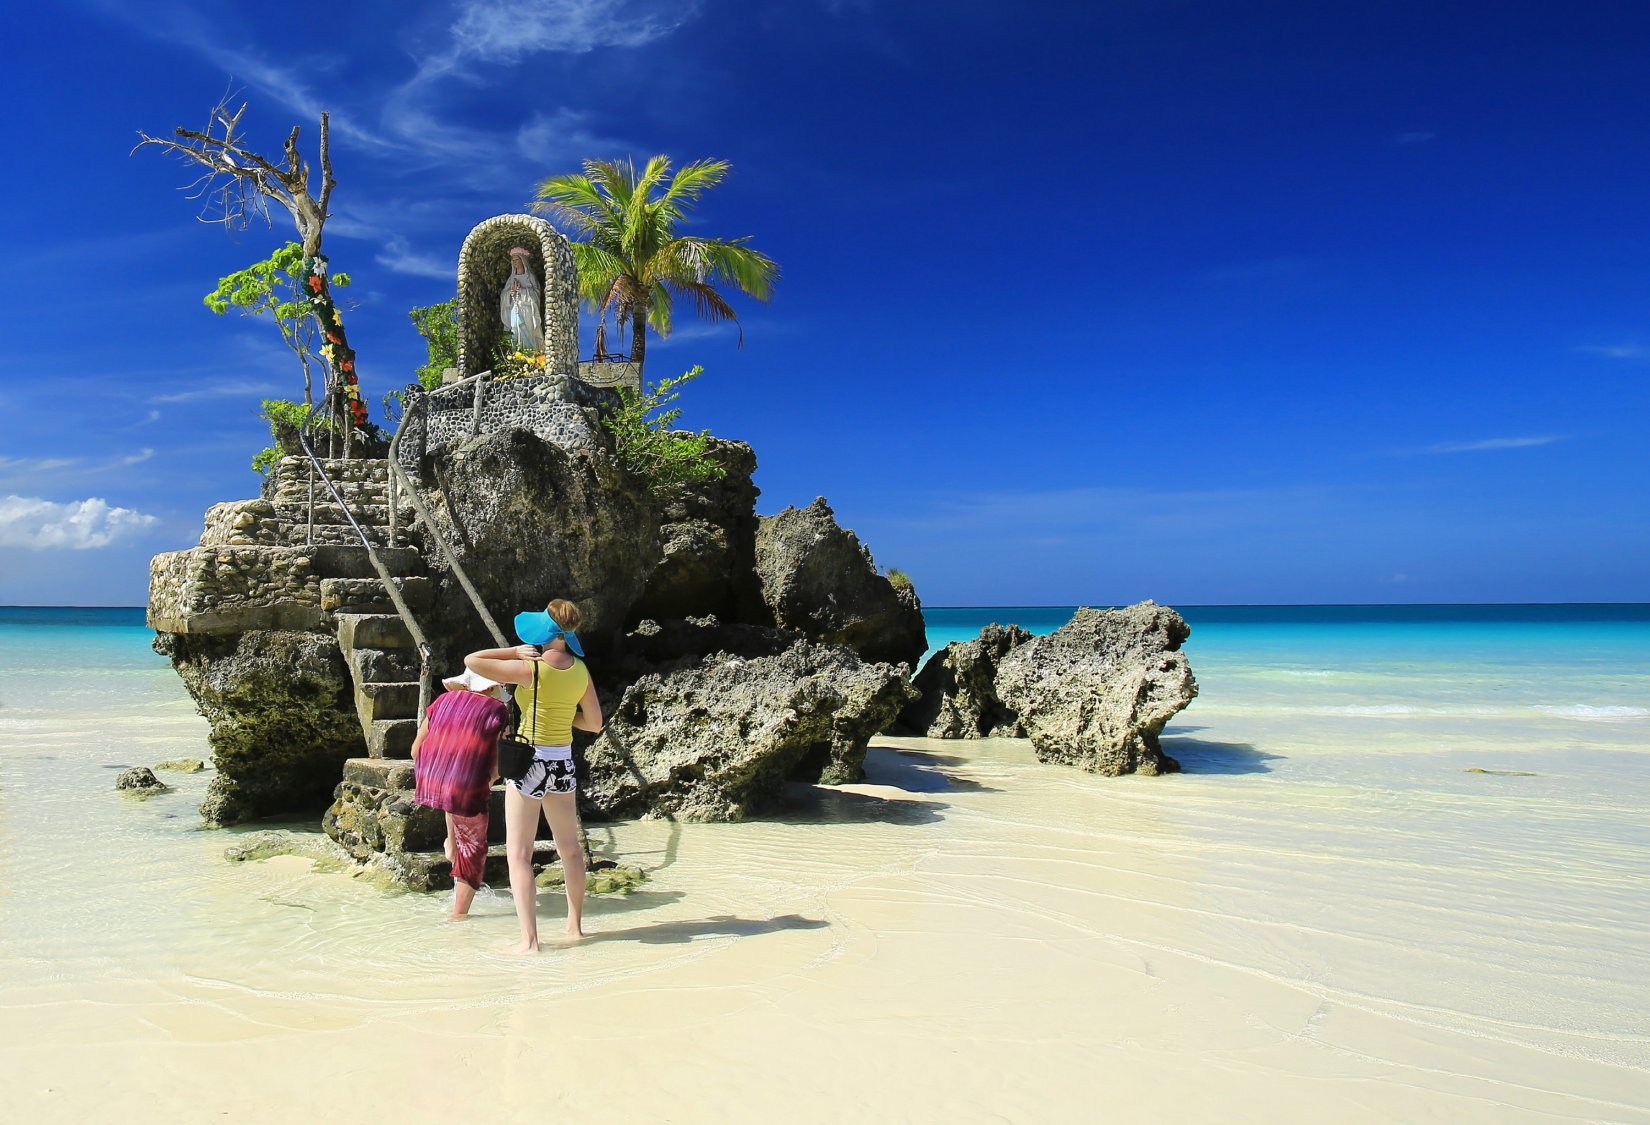 Боракай филиппины фото пляжей